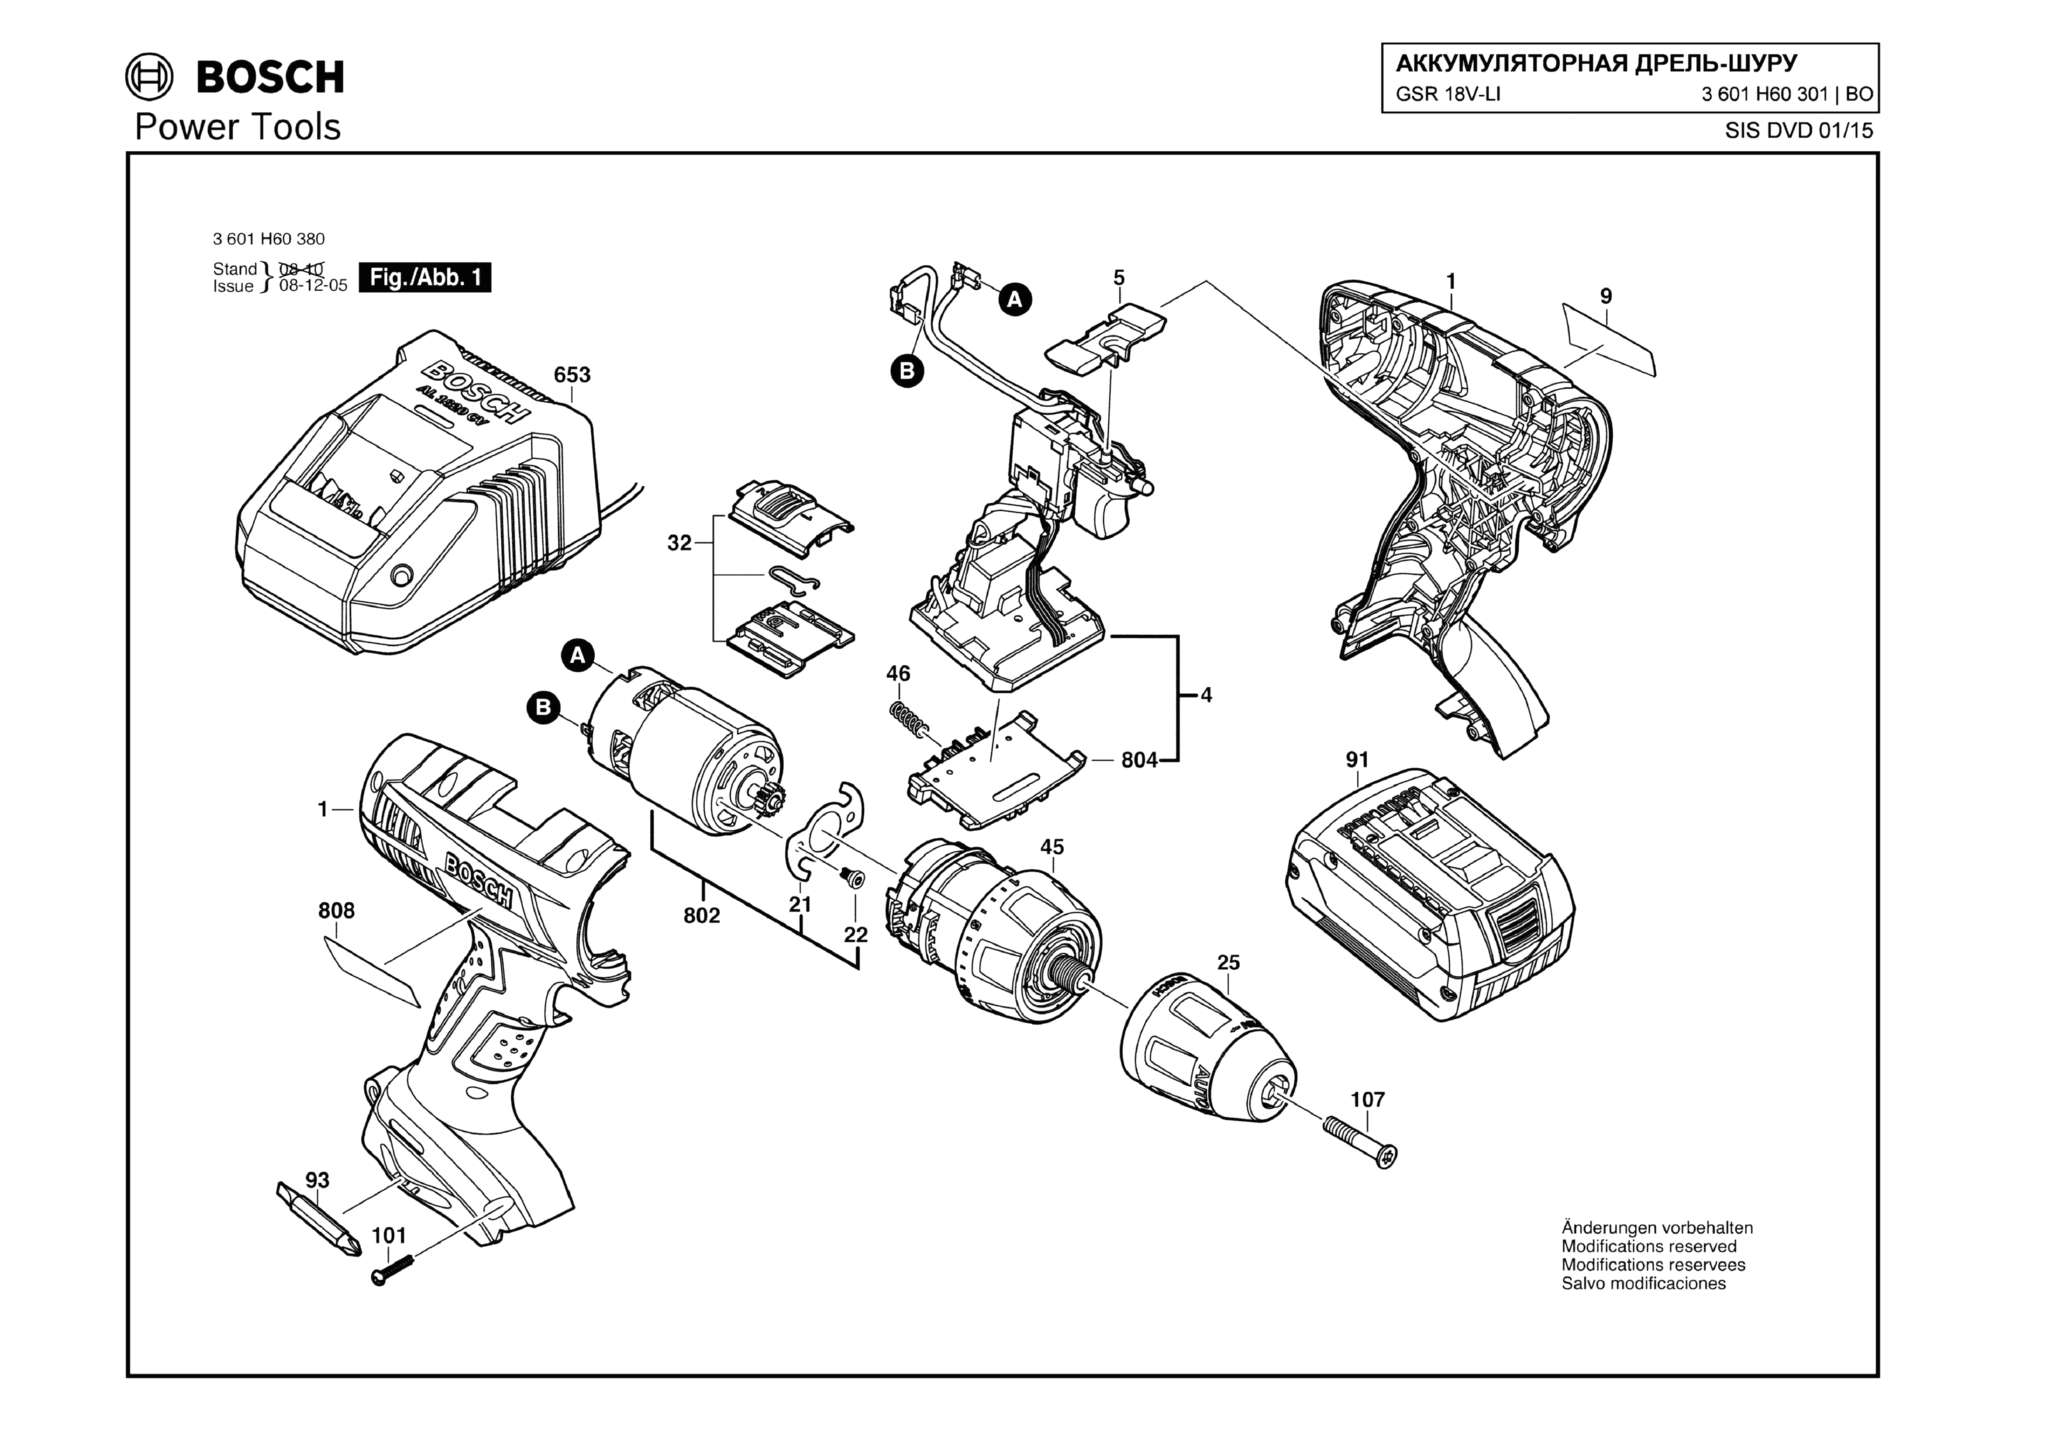 Запчасти, схема и деталировка Bosch GSR 18V-LI (ТИП 3601H60301)